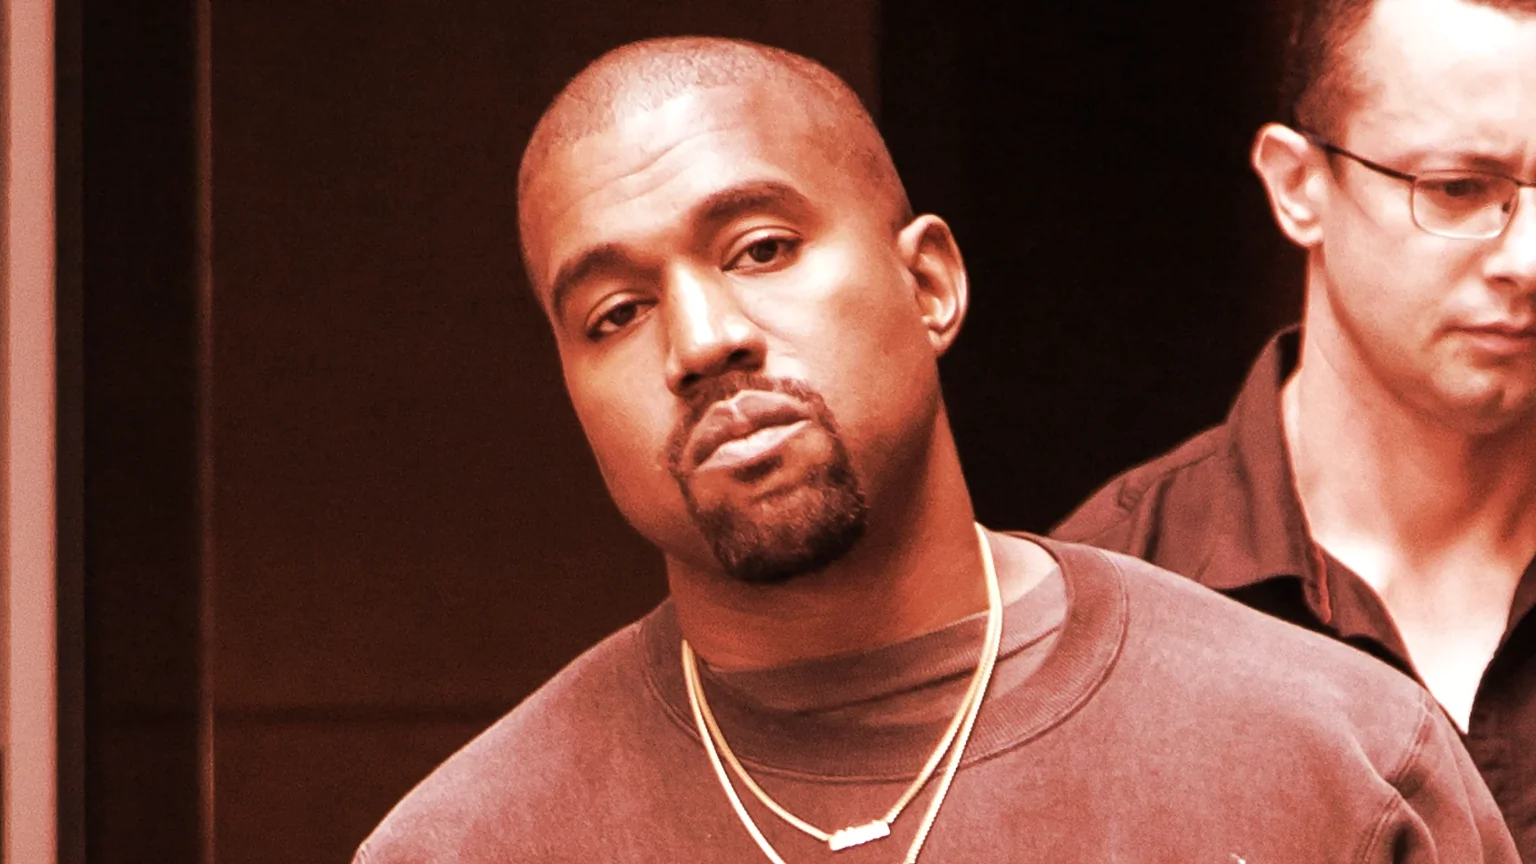 Kanye West. Image: Shutterstock